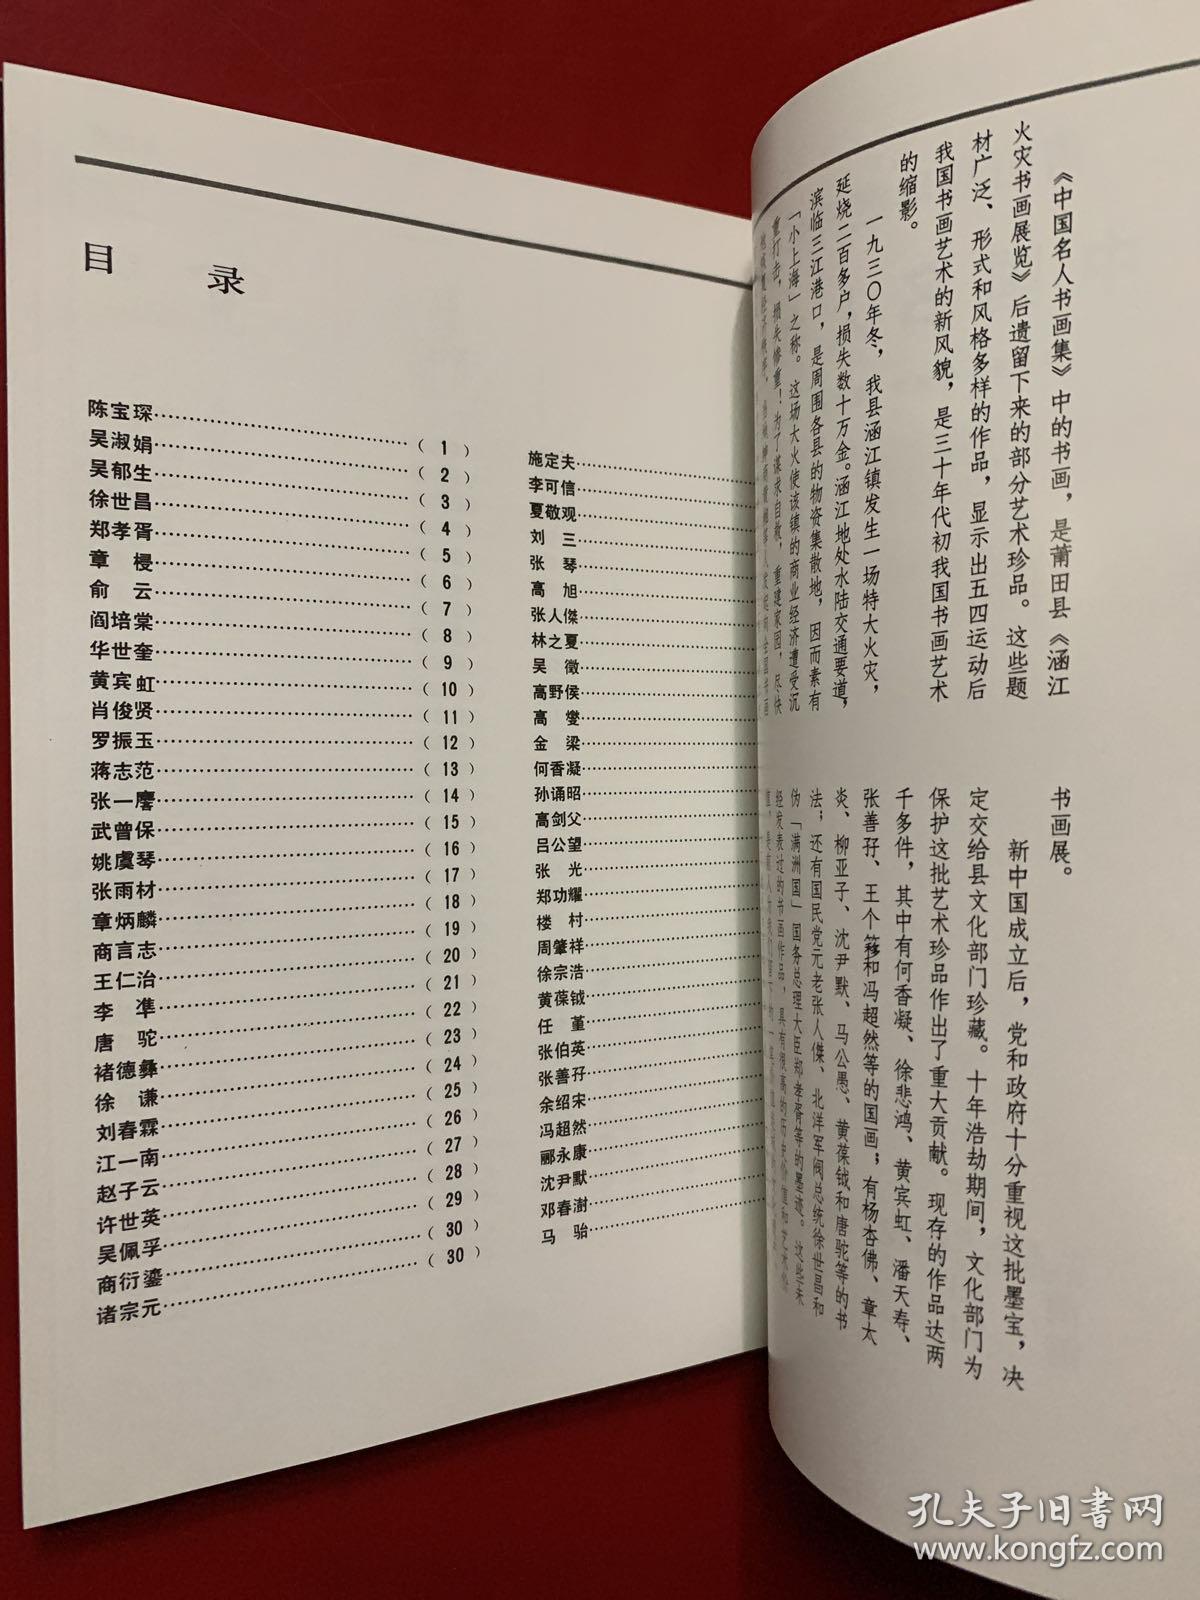 莆田县珍藏卅年代墨宝:中国名人书画集